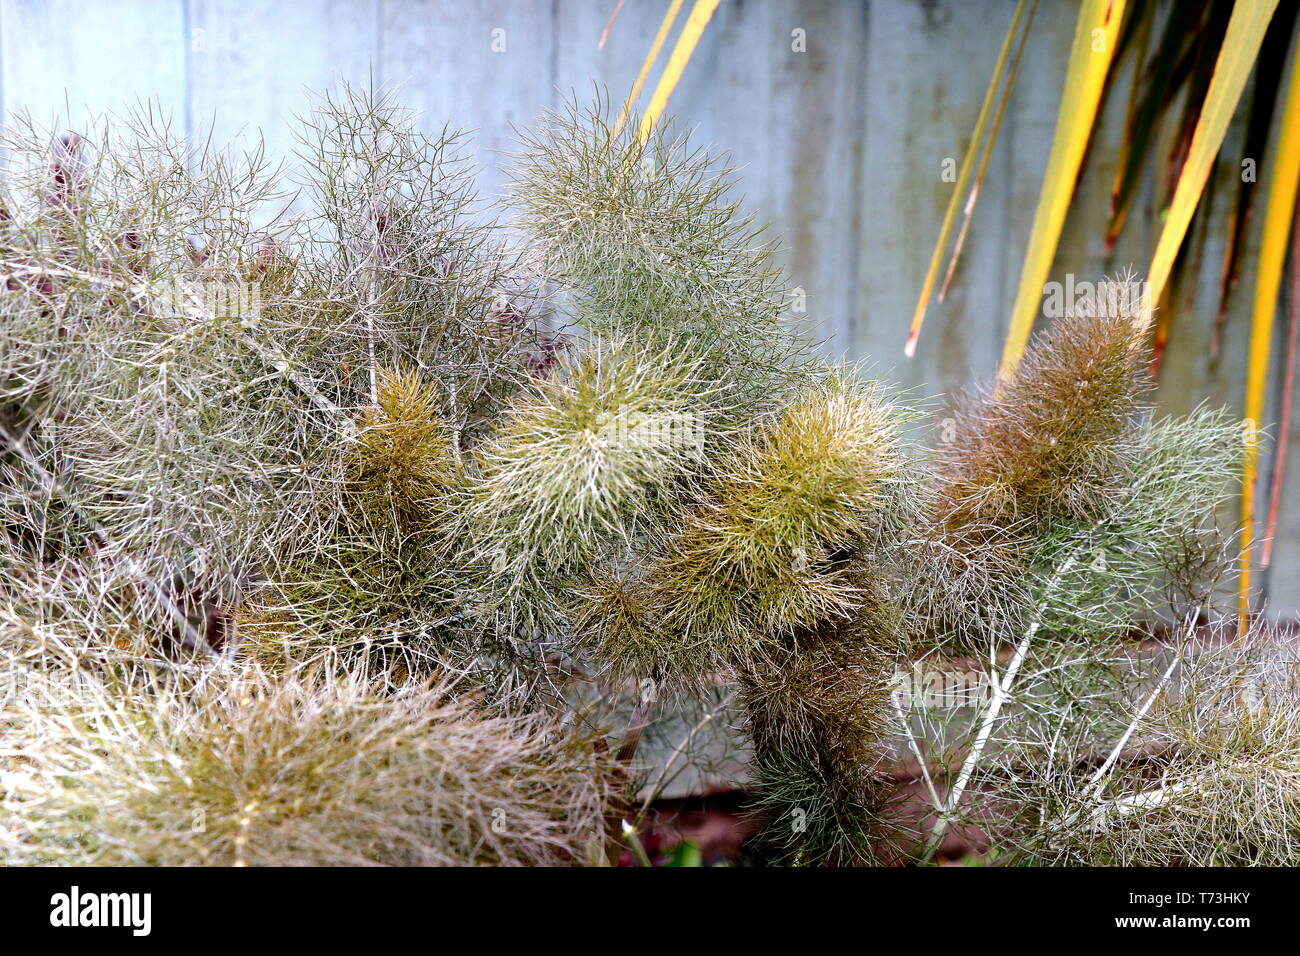 Bronze Fenchel, Foeniculum vulgare, ist eine blühende Pflanze Arten in der Karotte Familie. Eine winterharte Staude Pflanze mit gelben Blüten und gefiederten Blätter. Stockfoto